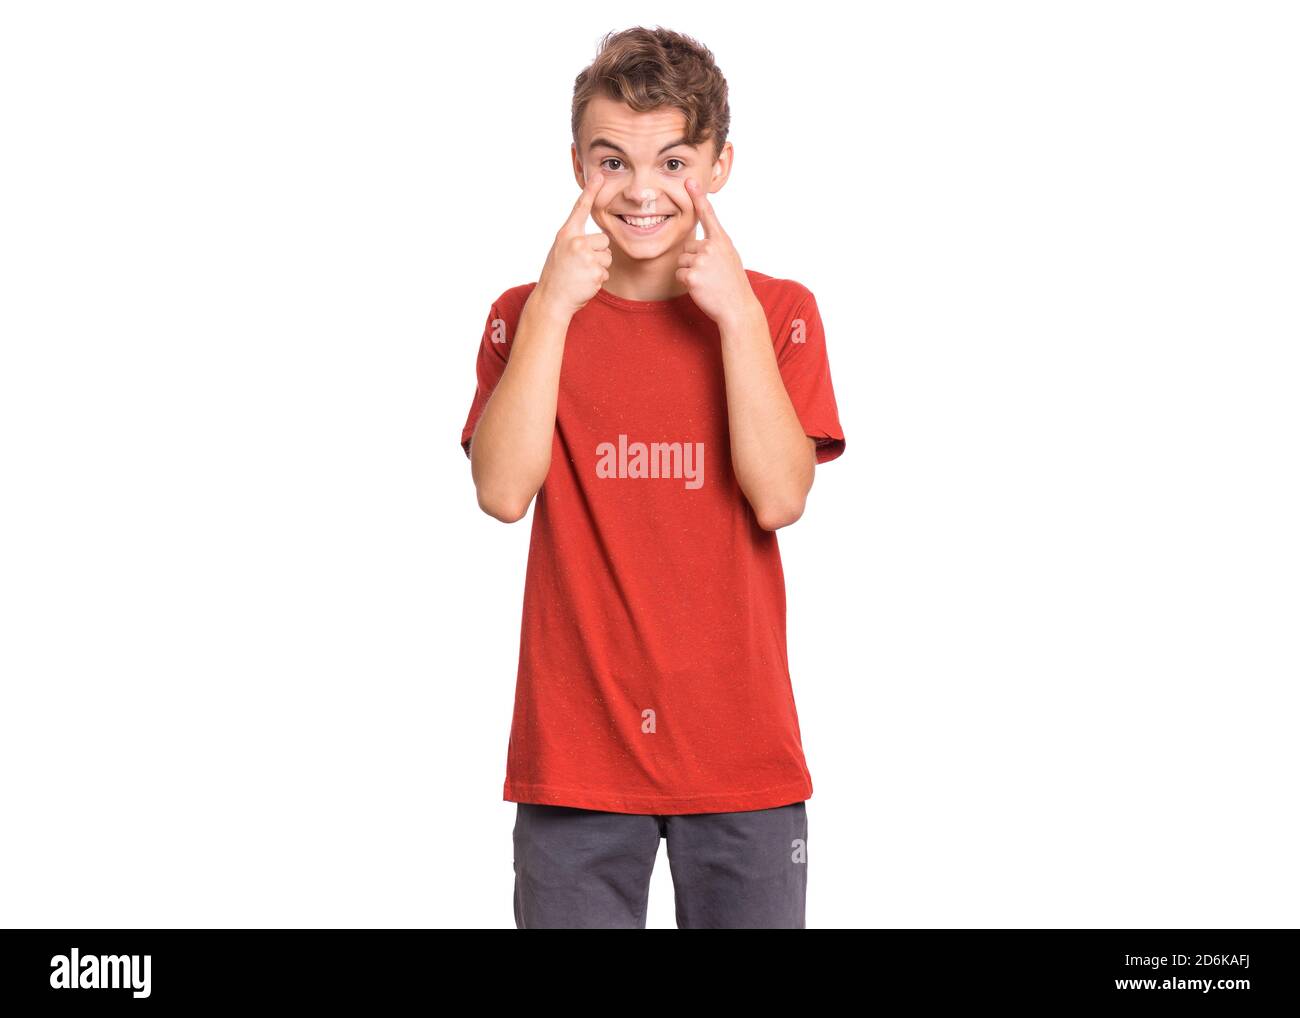 Schöner Teenager Junge zeigt sein Auge, isoliert auf weißem Hintergrund Stockfoto